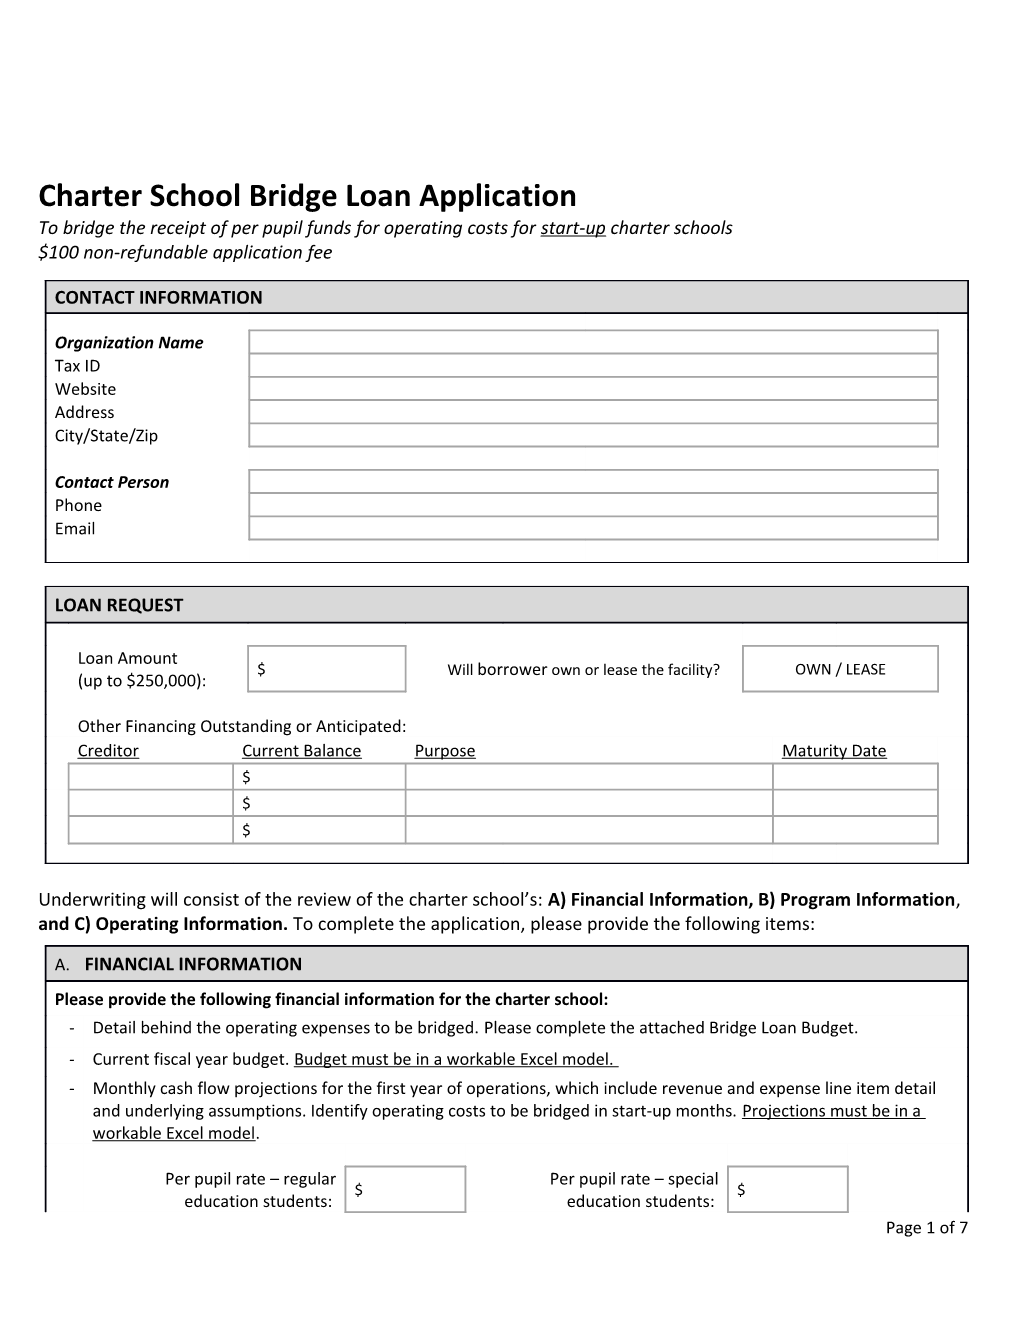 Charter School Bridge Loan Application